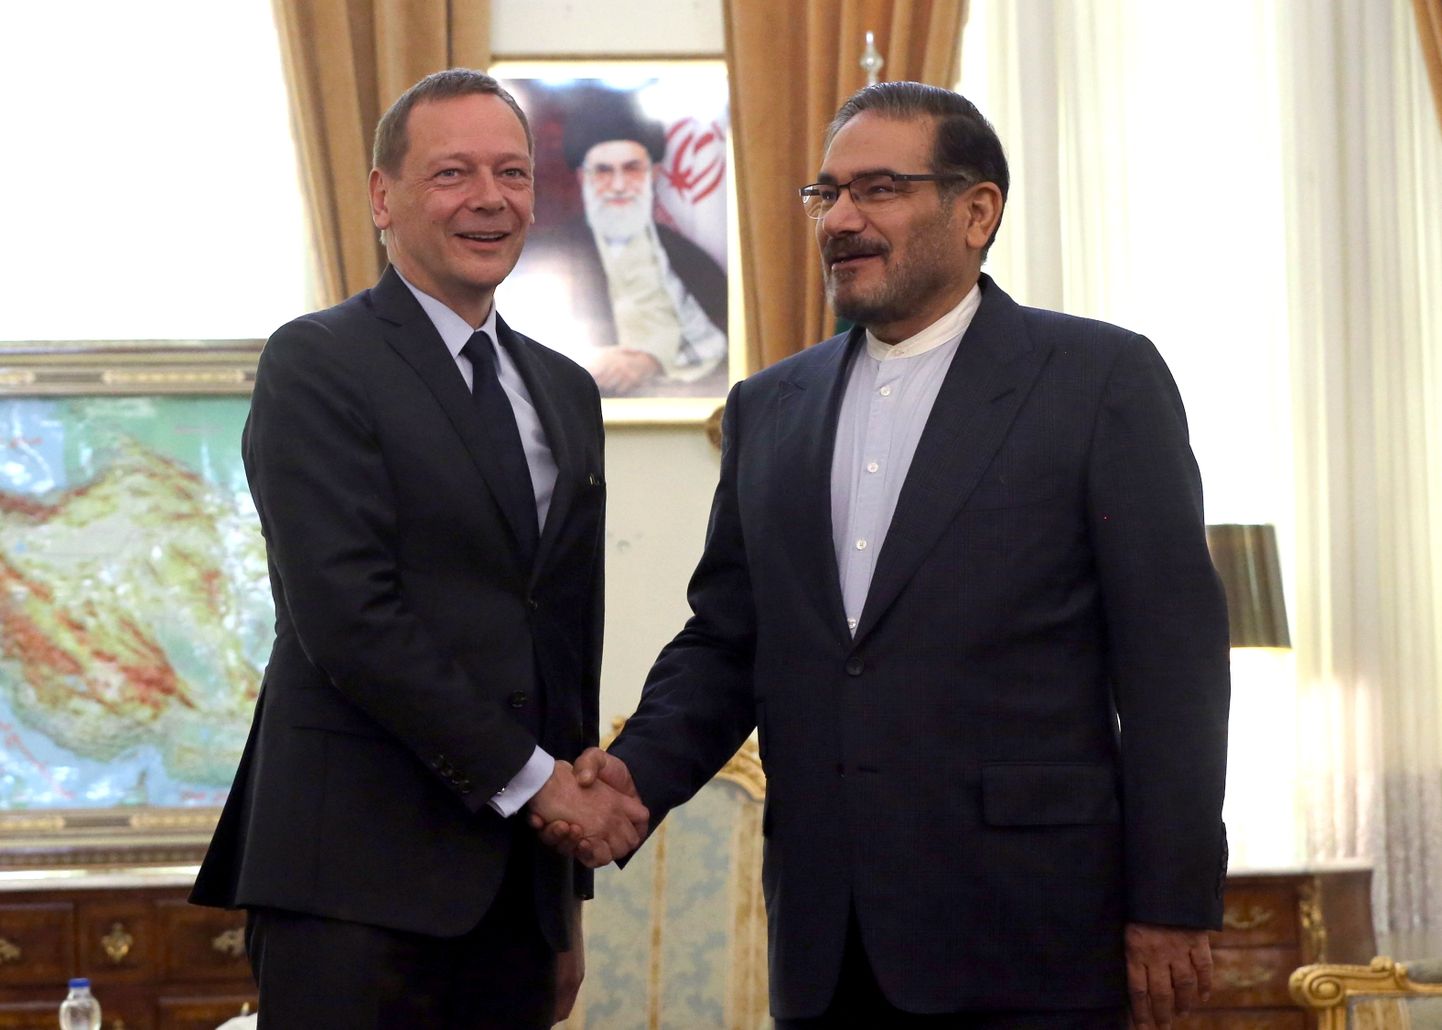 Iraani riikliku julgeoleku nõukogu sekretär Ali Shamkhani (paremal) kohtumisel Prantsuse presidendi esindaja Emmanuel Bonne'ga 10. juulil Teheranis.